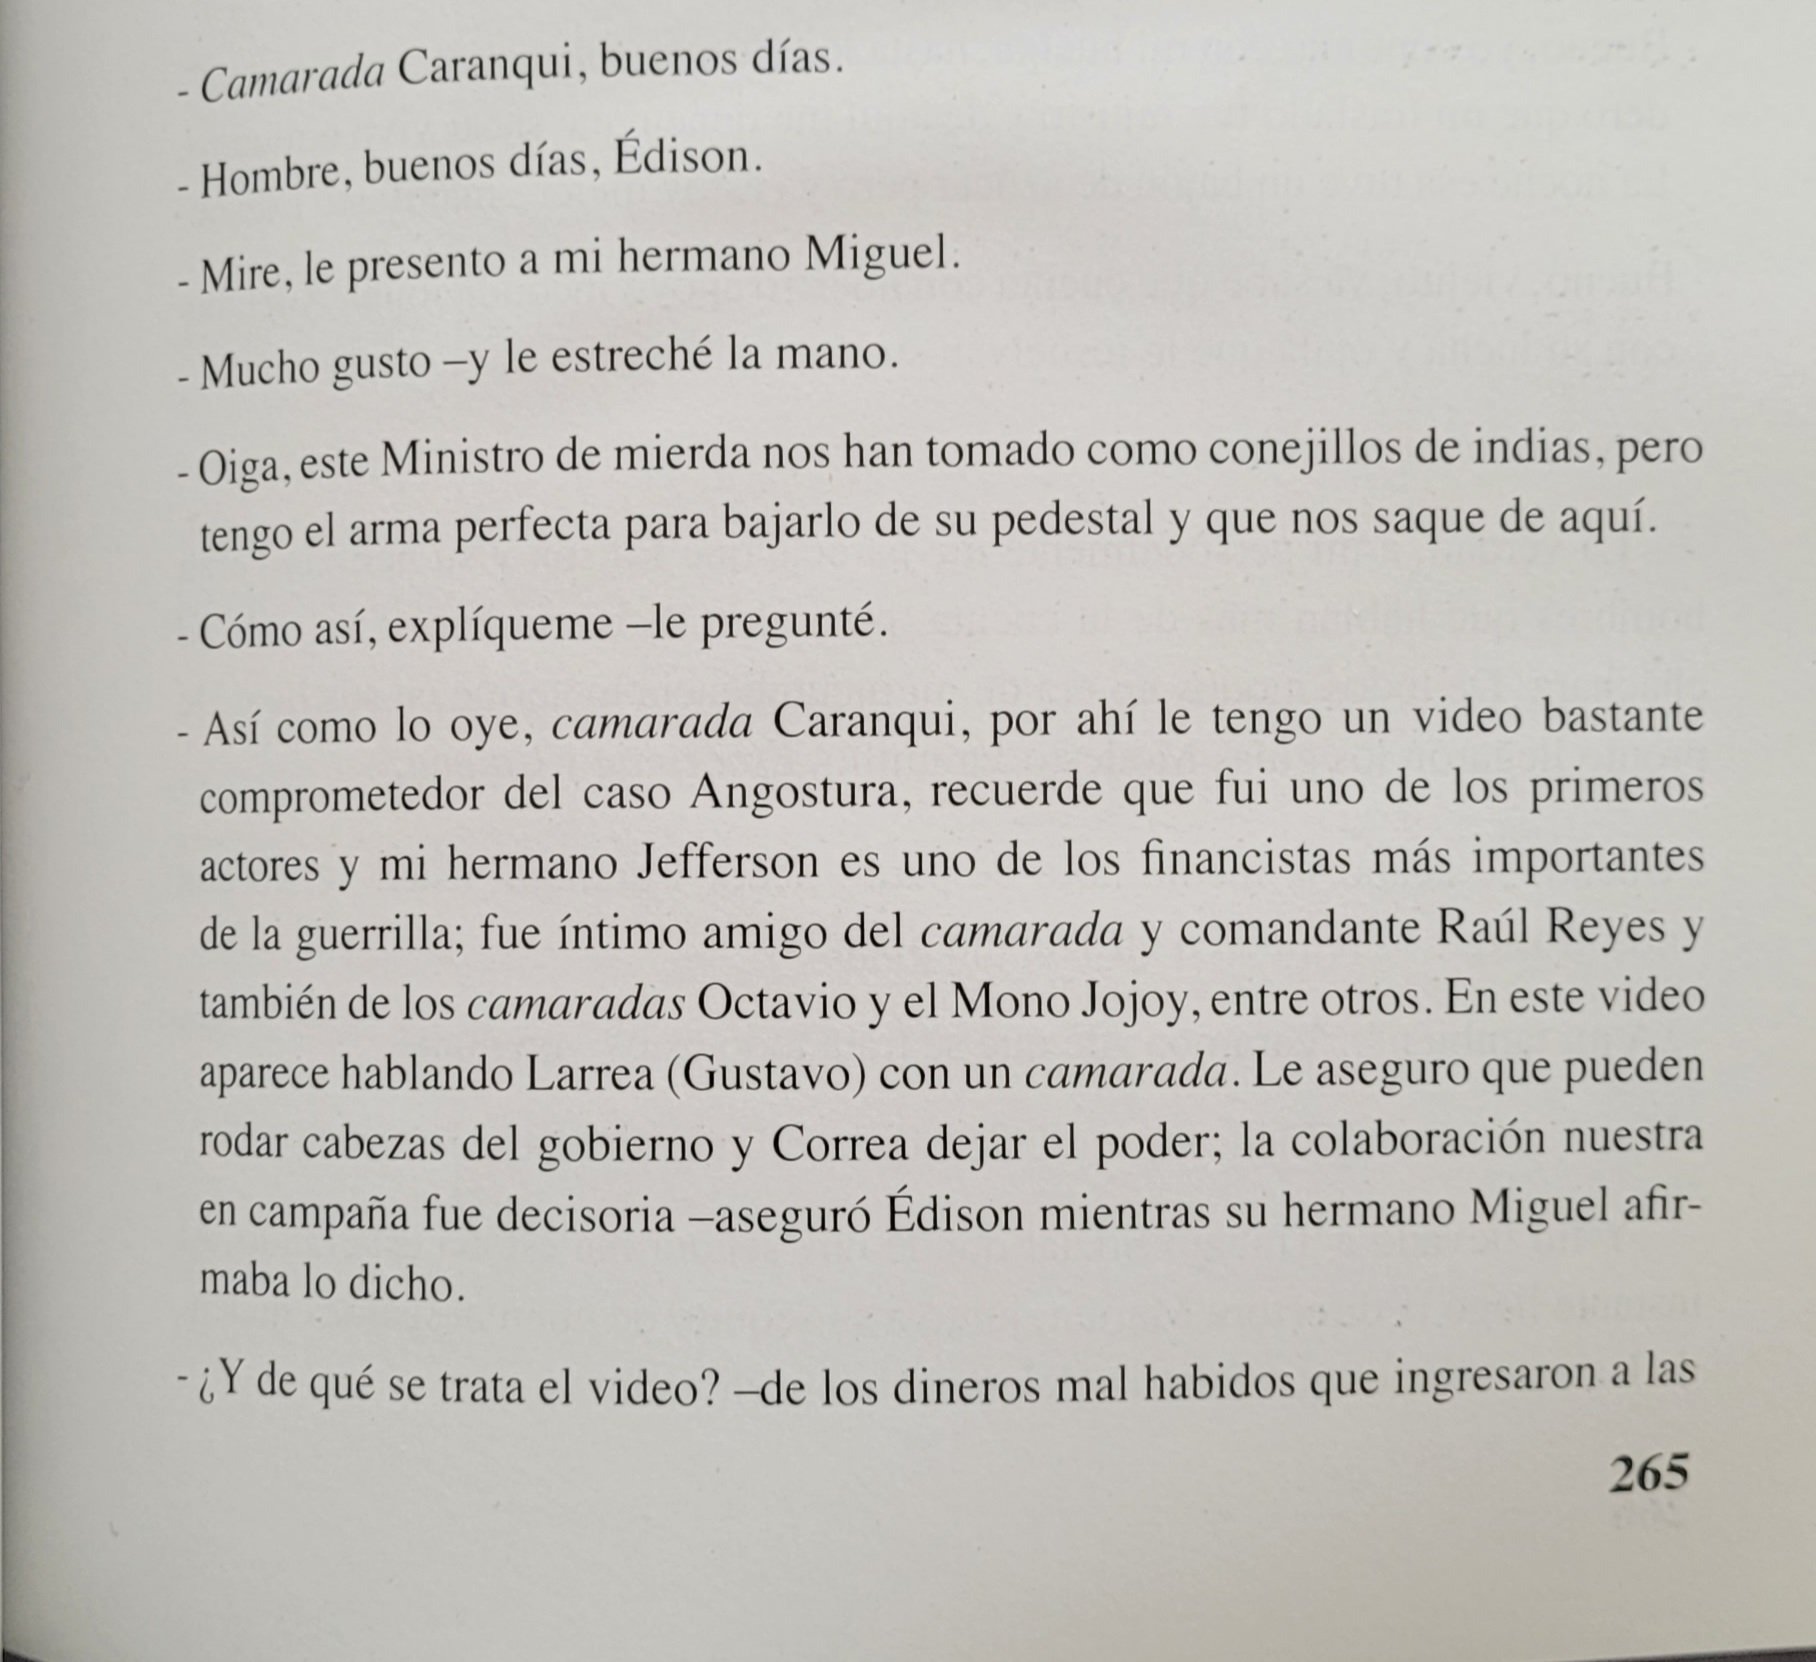 Página 265 del libro de Óscar Caranqui donde se detalla la conversación entre el narcotraficante y los hermanos Ostaiza sobre el caso Angostura. (Narcos Ecuador)